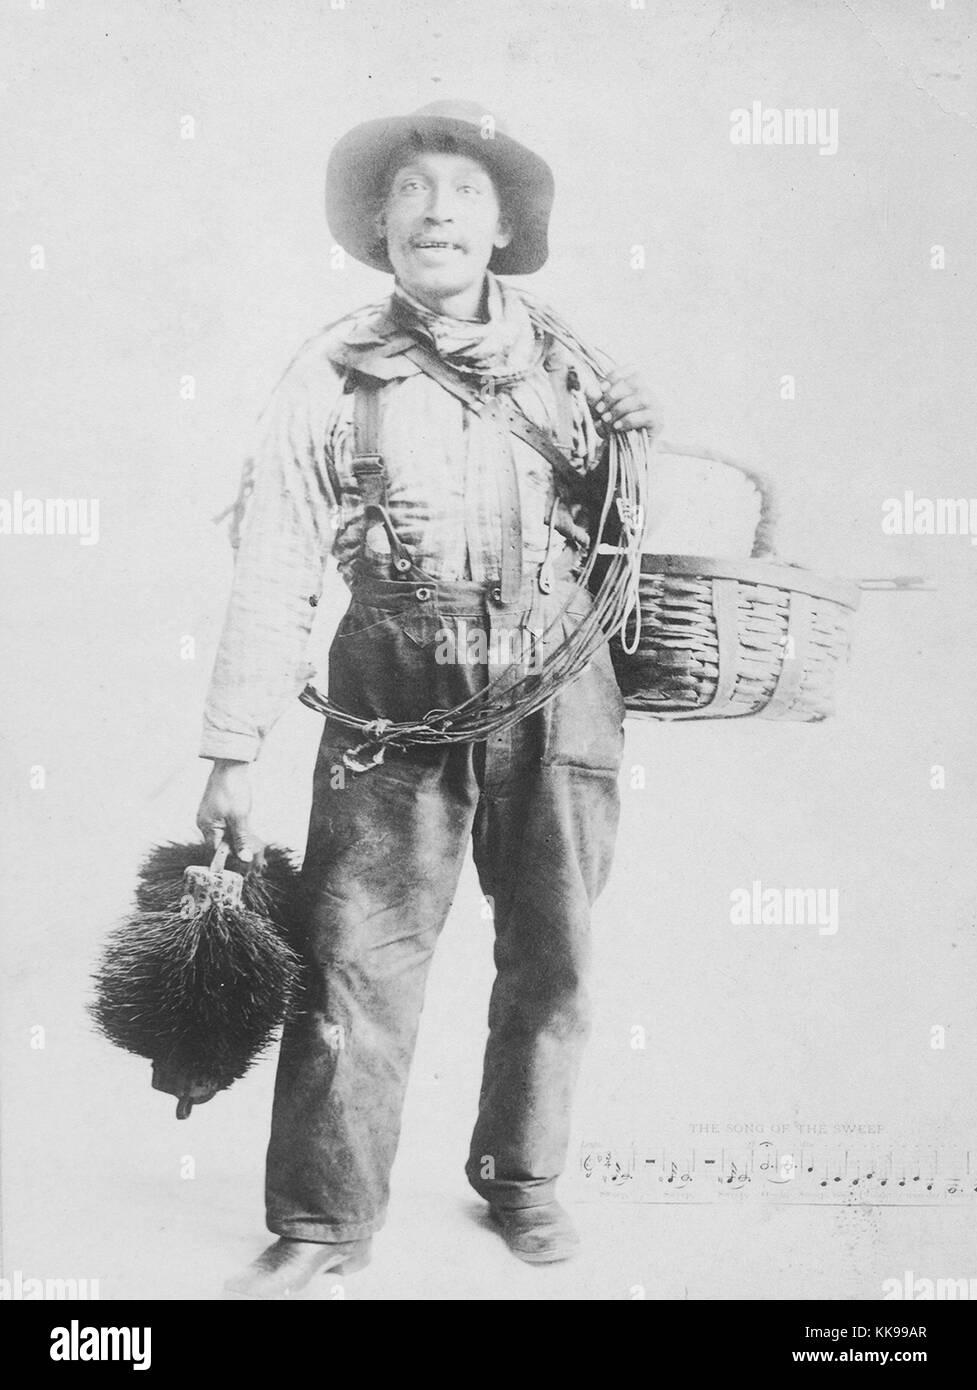 Sepia studio portrait d'un homme afro-américain, pleine longueur, pleine de vêtements ramoneur, tenant un panier, des câbles et des balayeuses, 1900. À partir de la Bibliothèque publique de New York. Banque D'Images